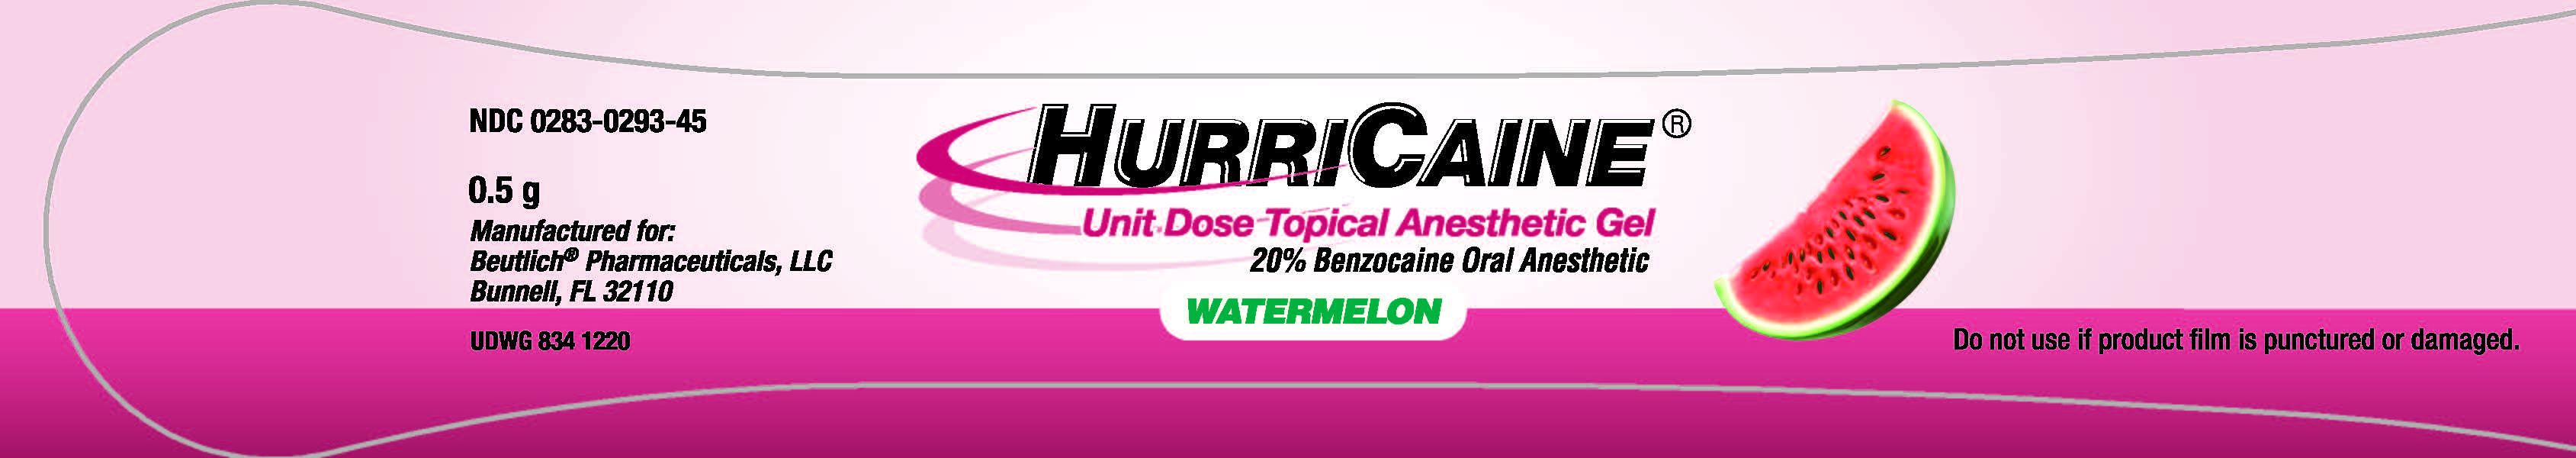 unit dose Watermelon